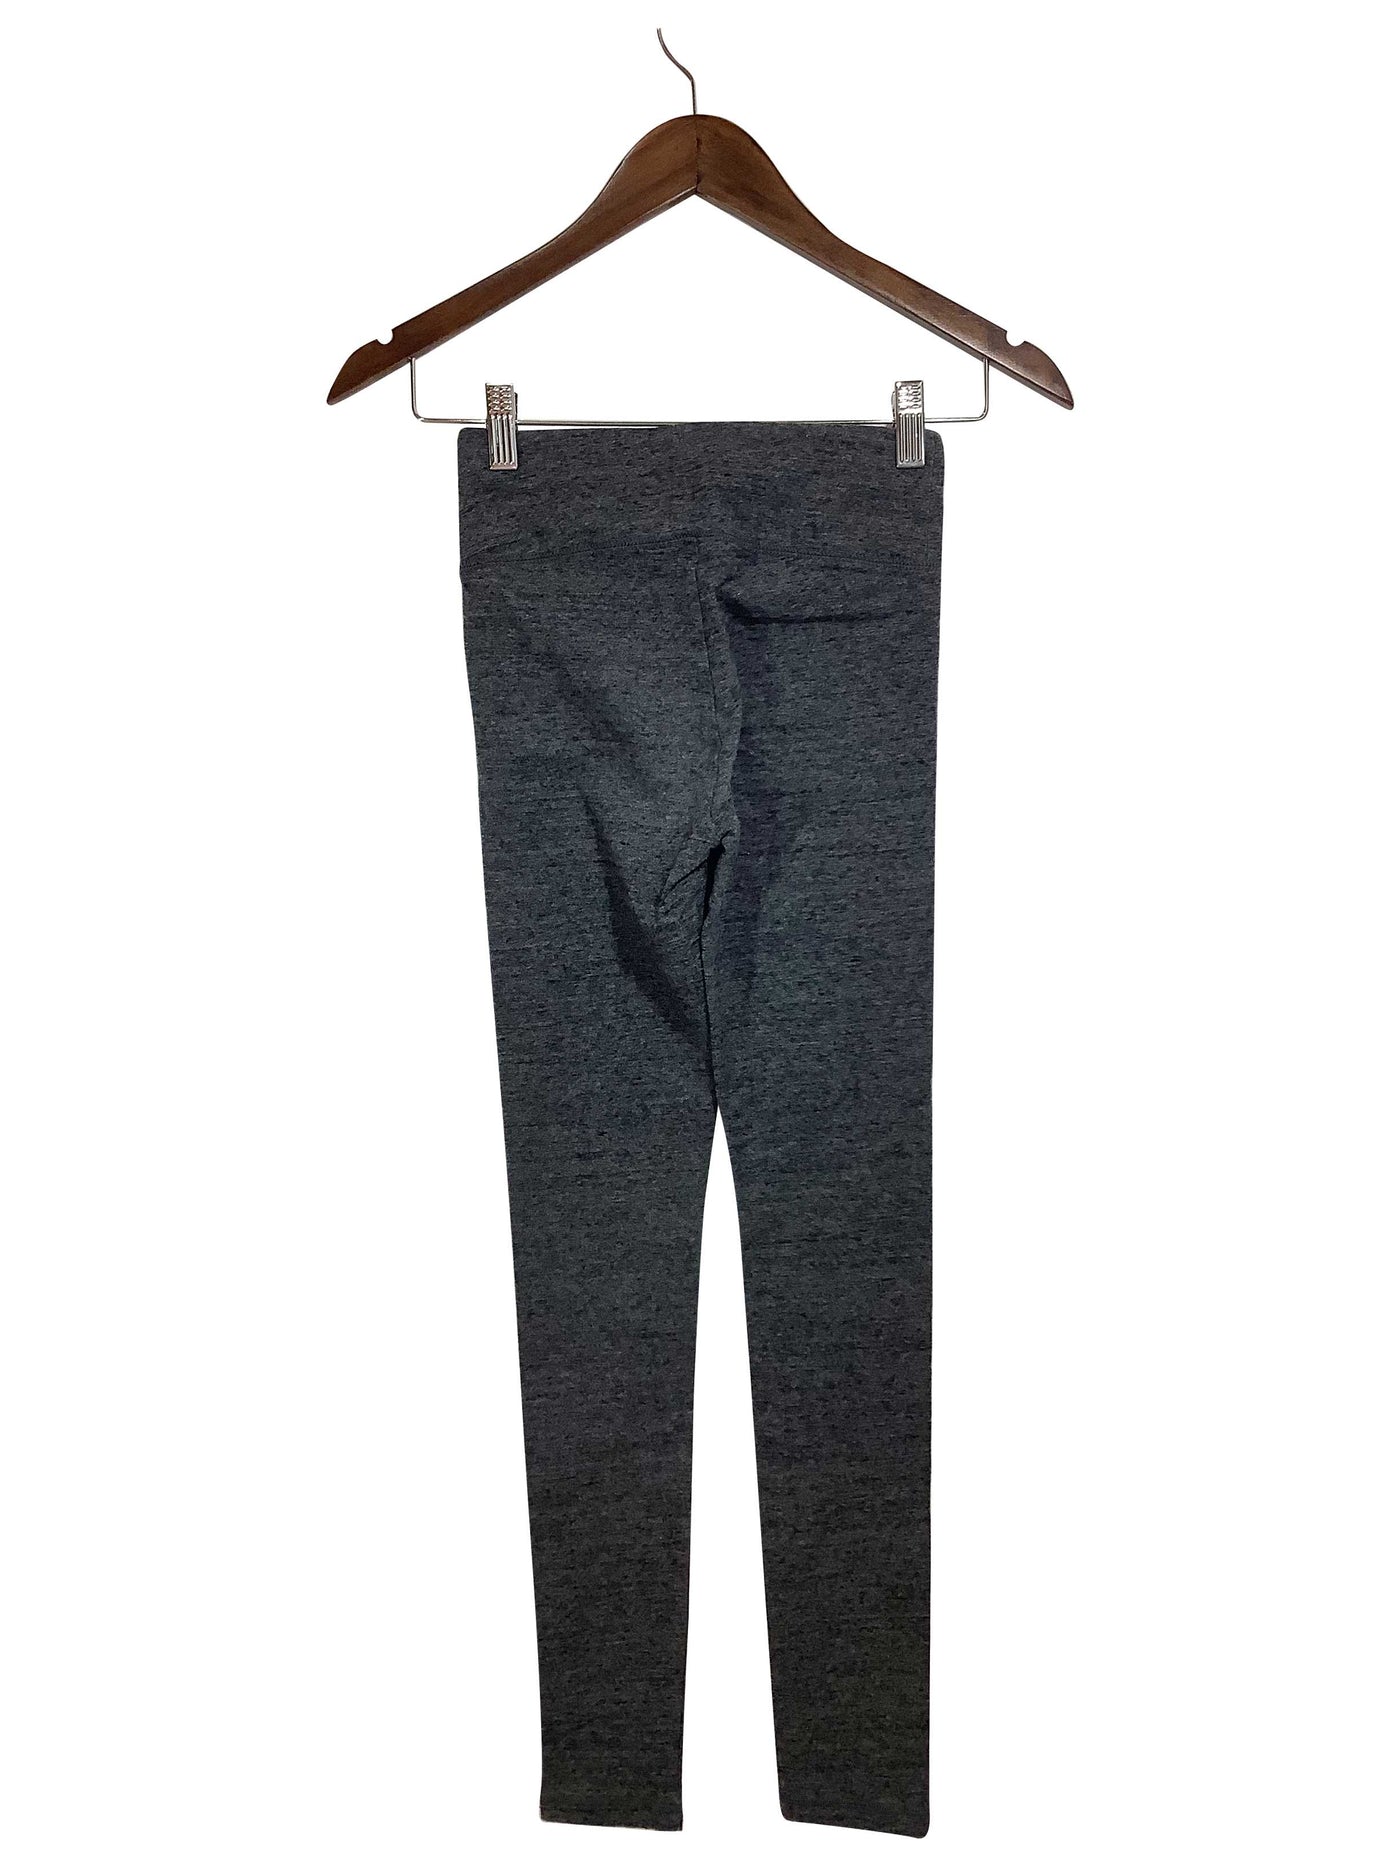 NICOLE MILLER Regular fit Activewear Legging in Gray - Size XS | 15.65 $ KOOP